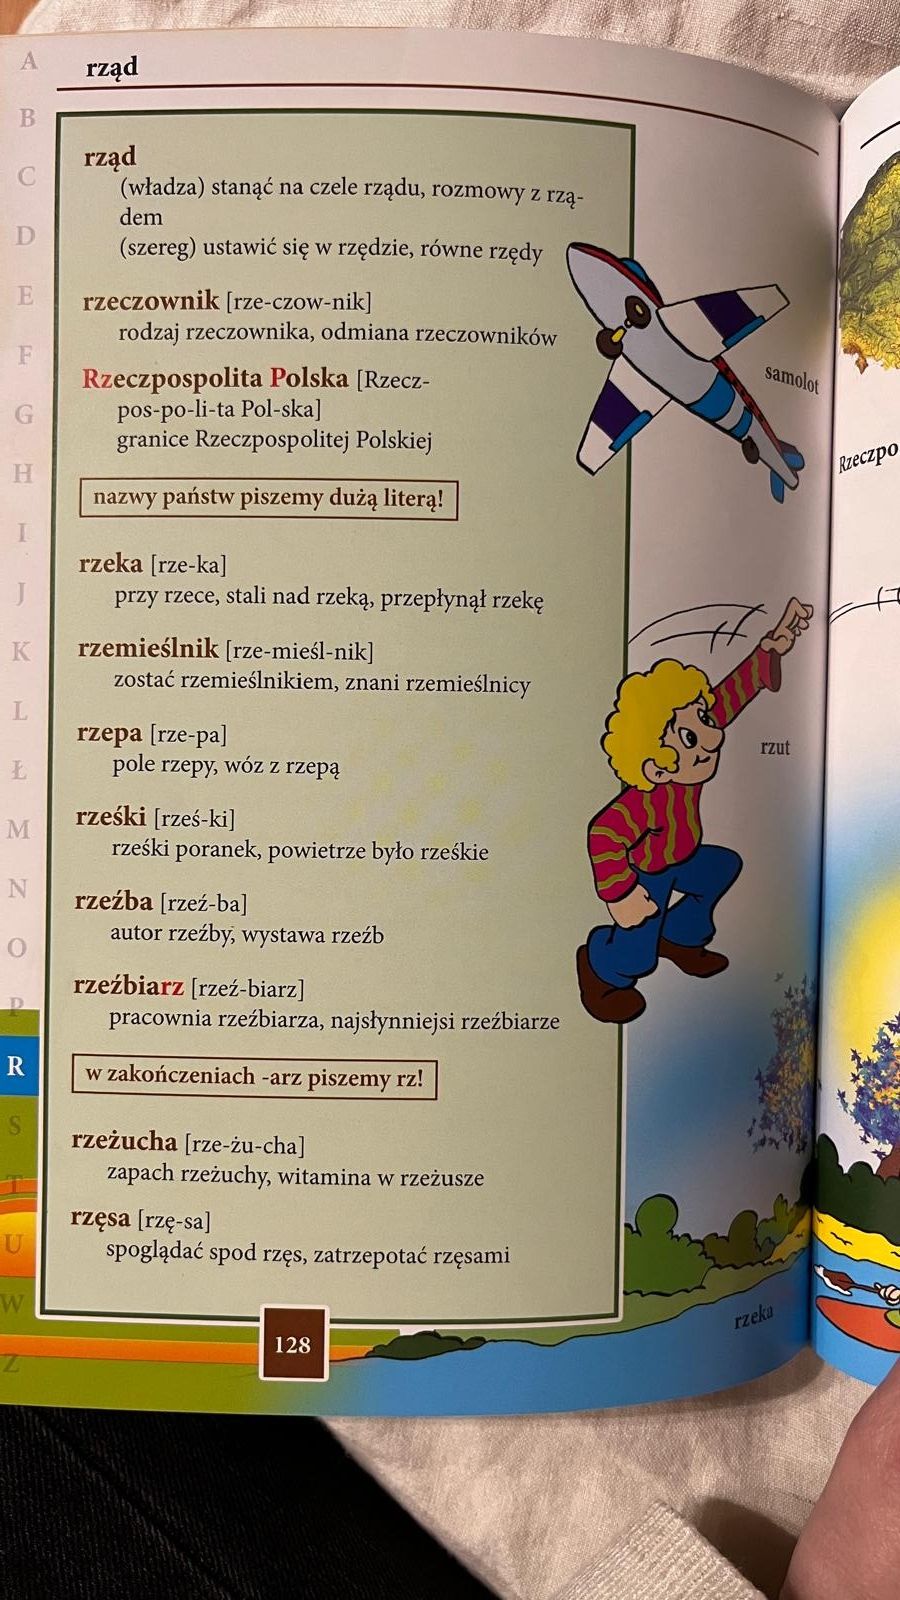 Słownik ortograficzny ilustrowany